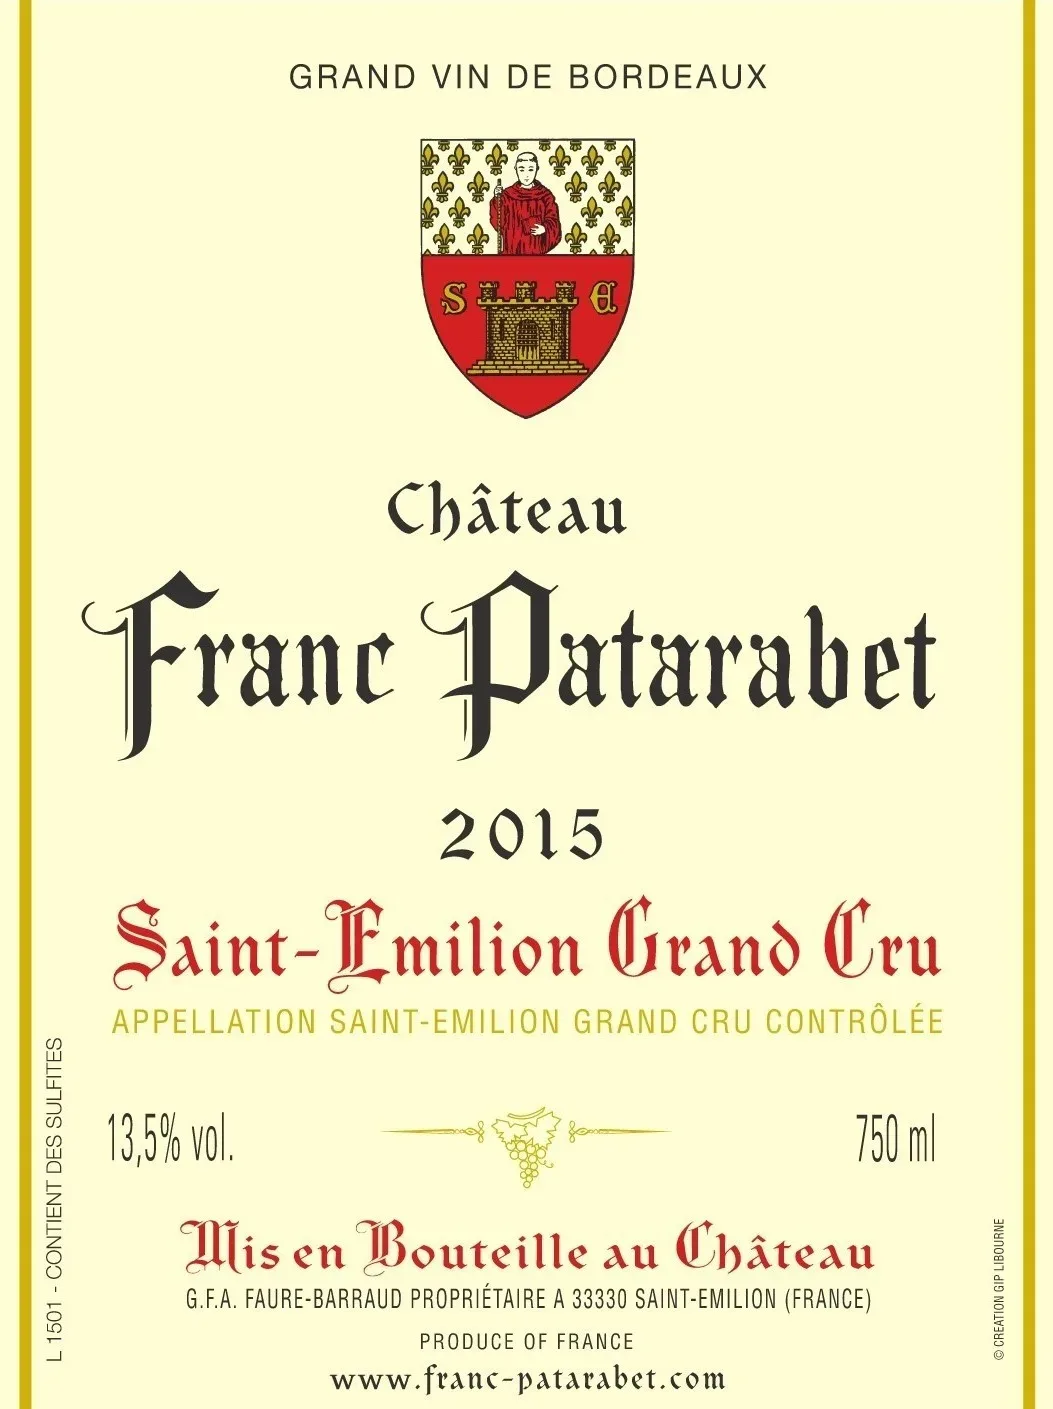 Front label for Chateau Franc Patarabet Saint Emilion Grand Cru